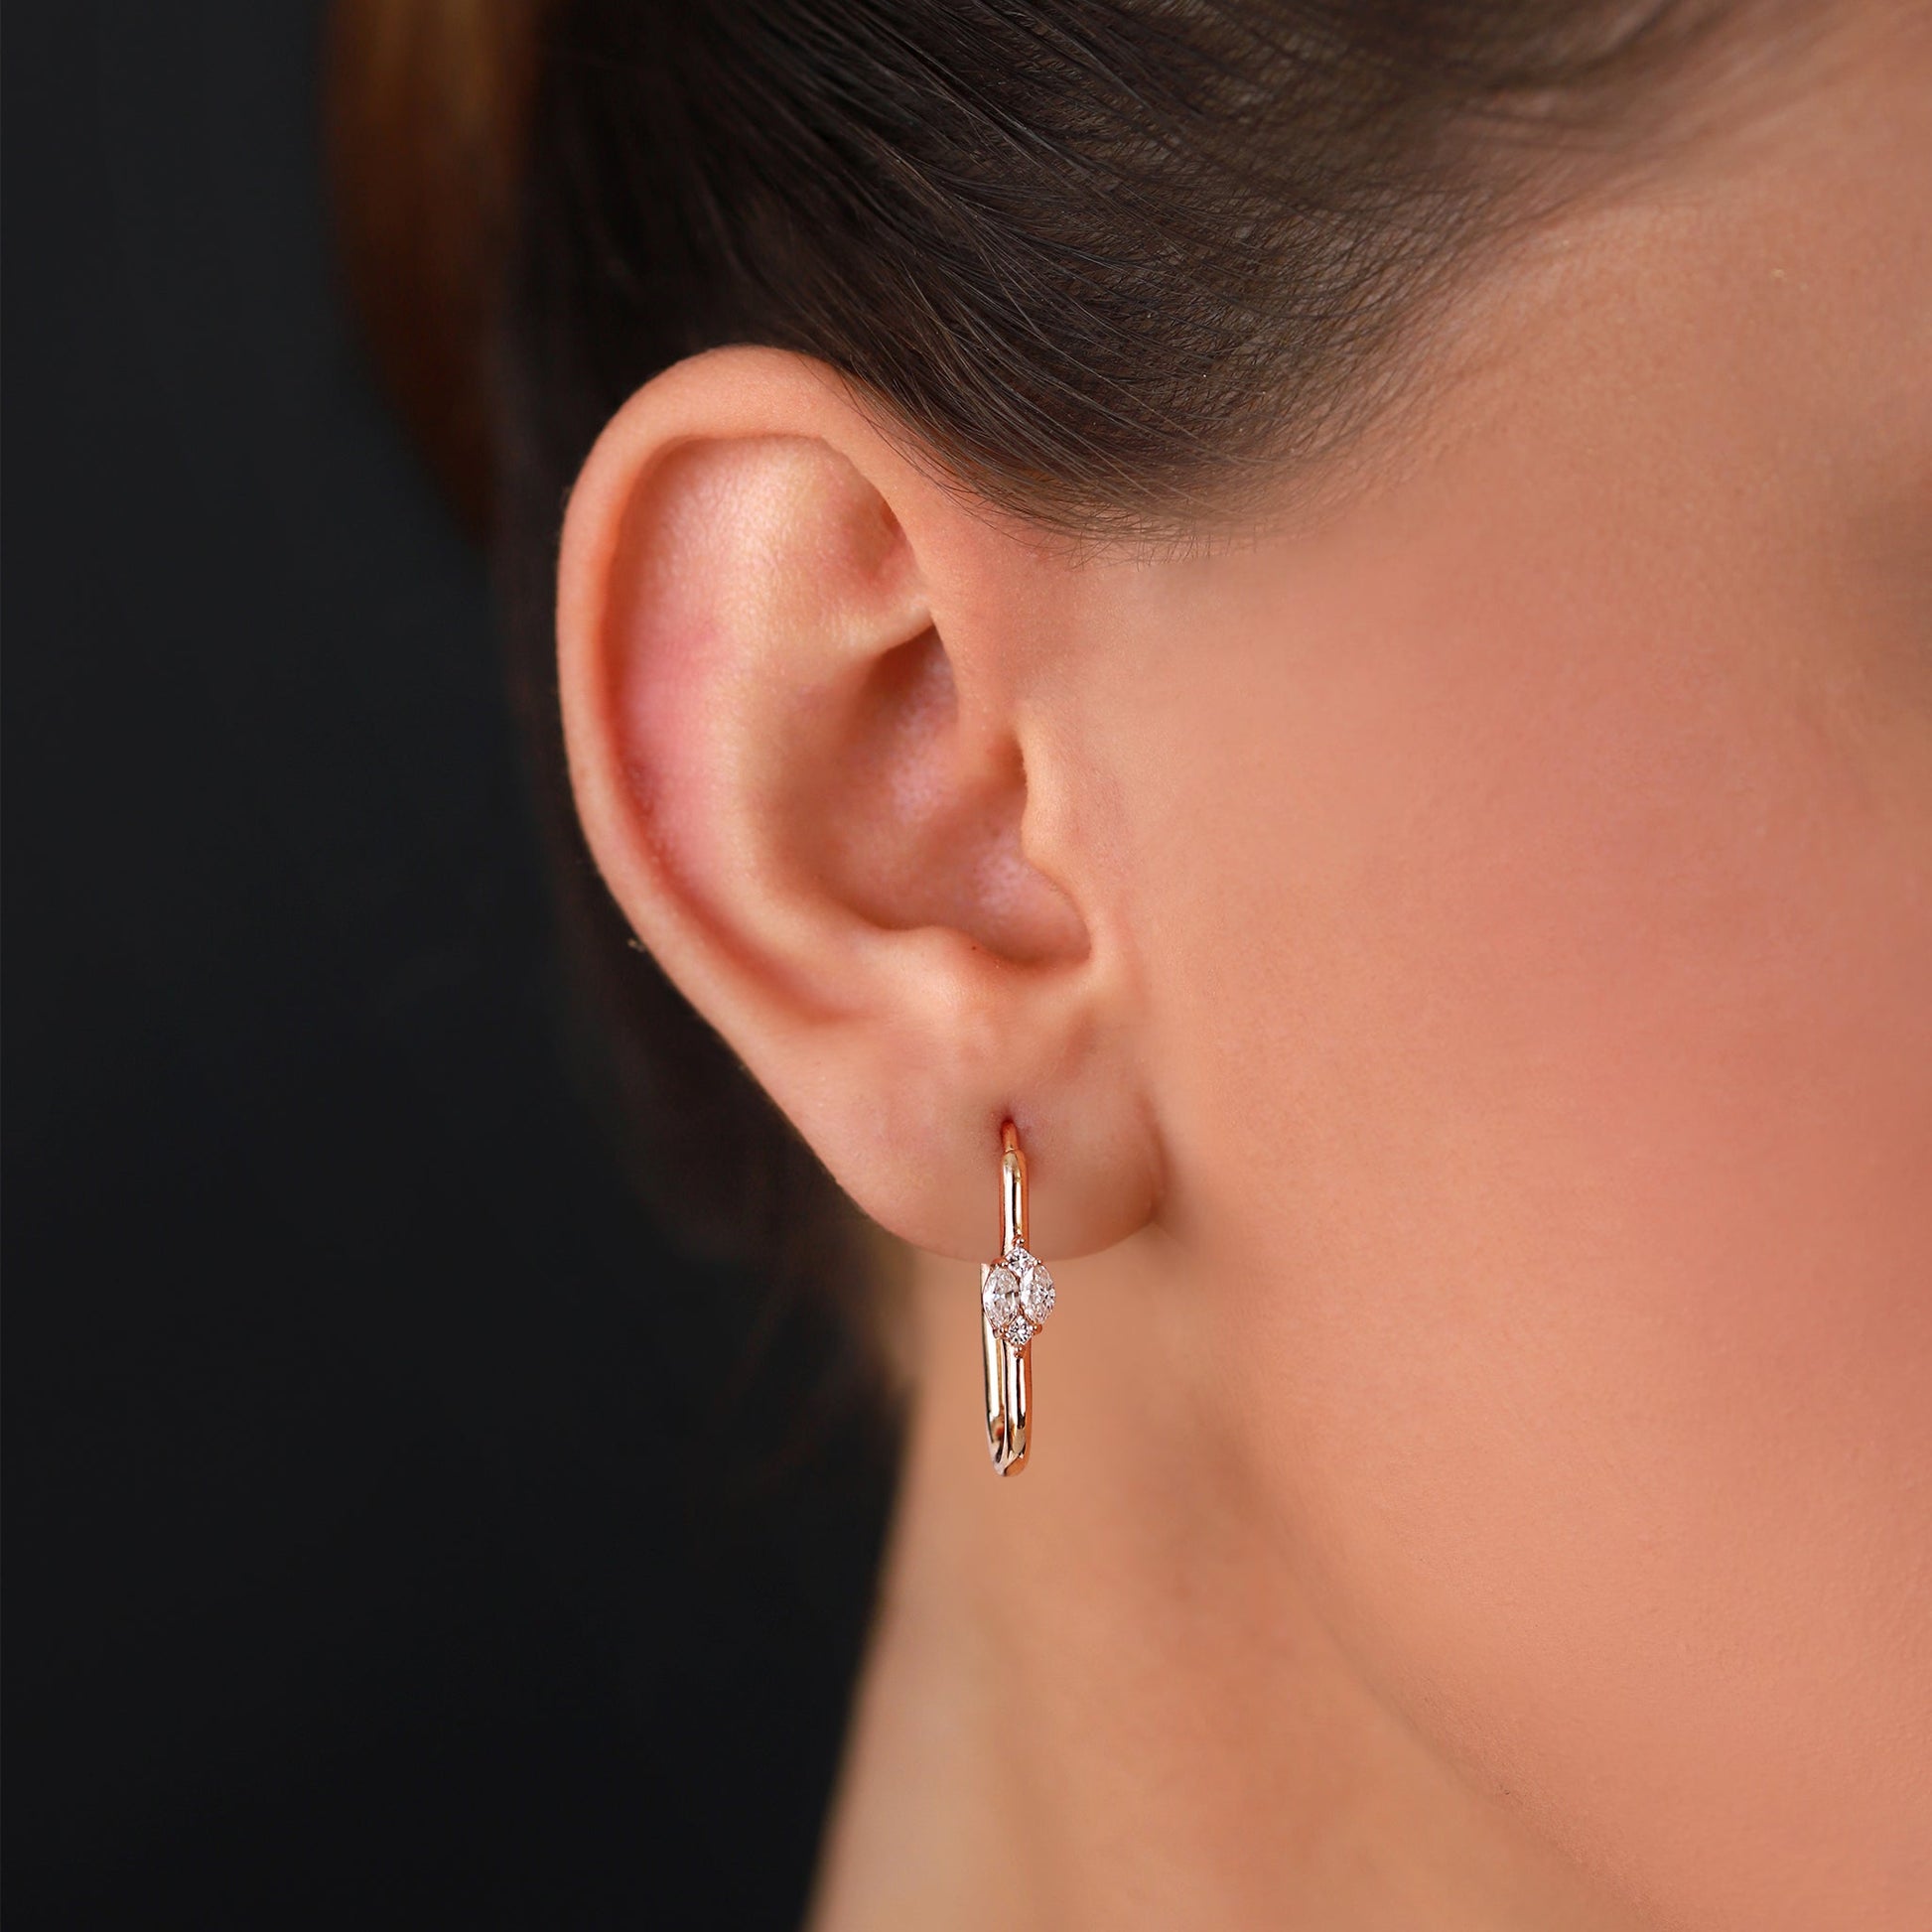 Jewelry Marquise Hoops | Medium Diamond Earrings | 0.41 Cts. | 14K Gold - earring Zengoda Shop online from